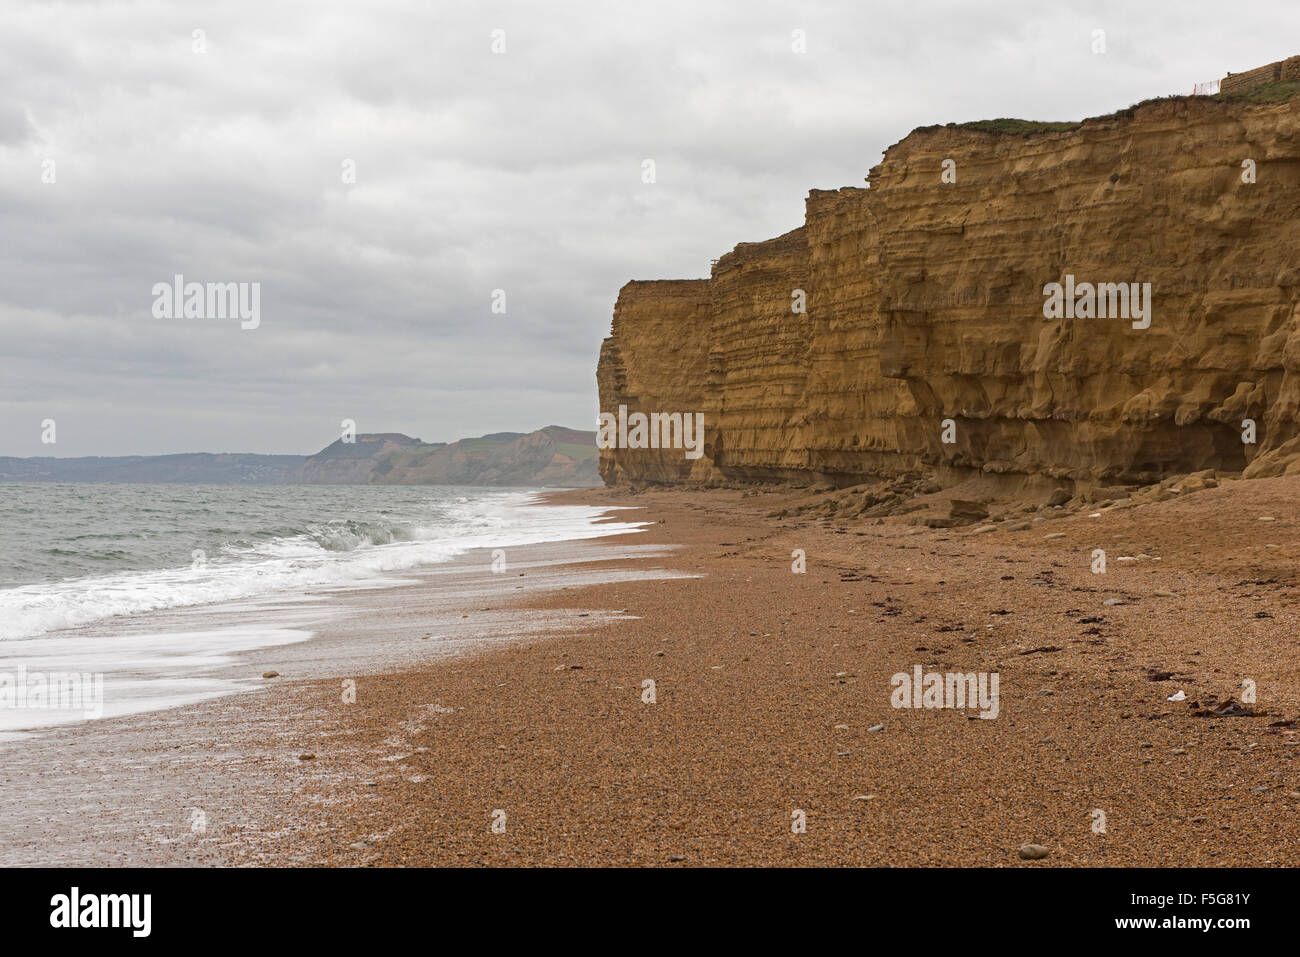 Falaises de grès et de galets de la plage de Chesil sous un ciel couvert journée d'automne à marée haute, West Bay, Dorset, octobre Banque D'Images